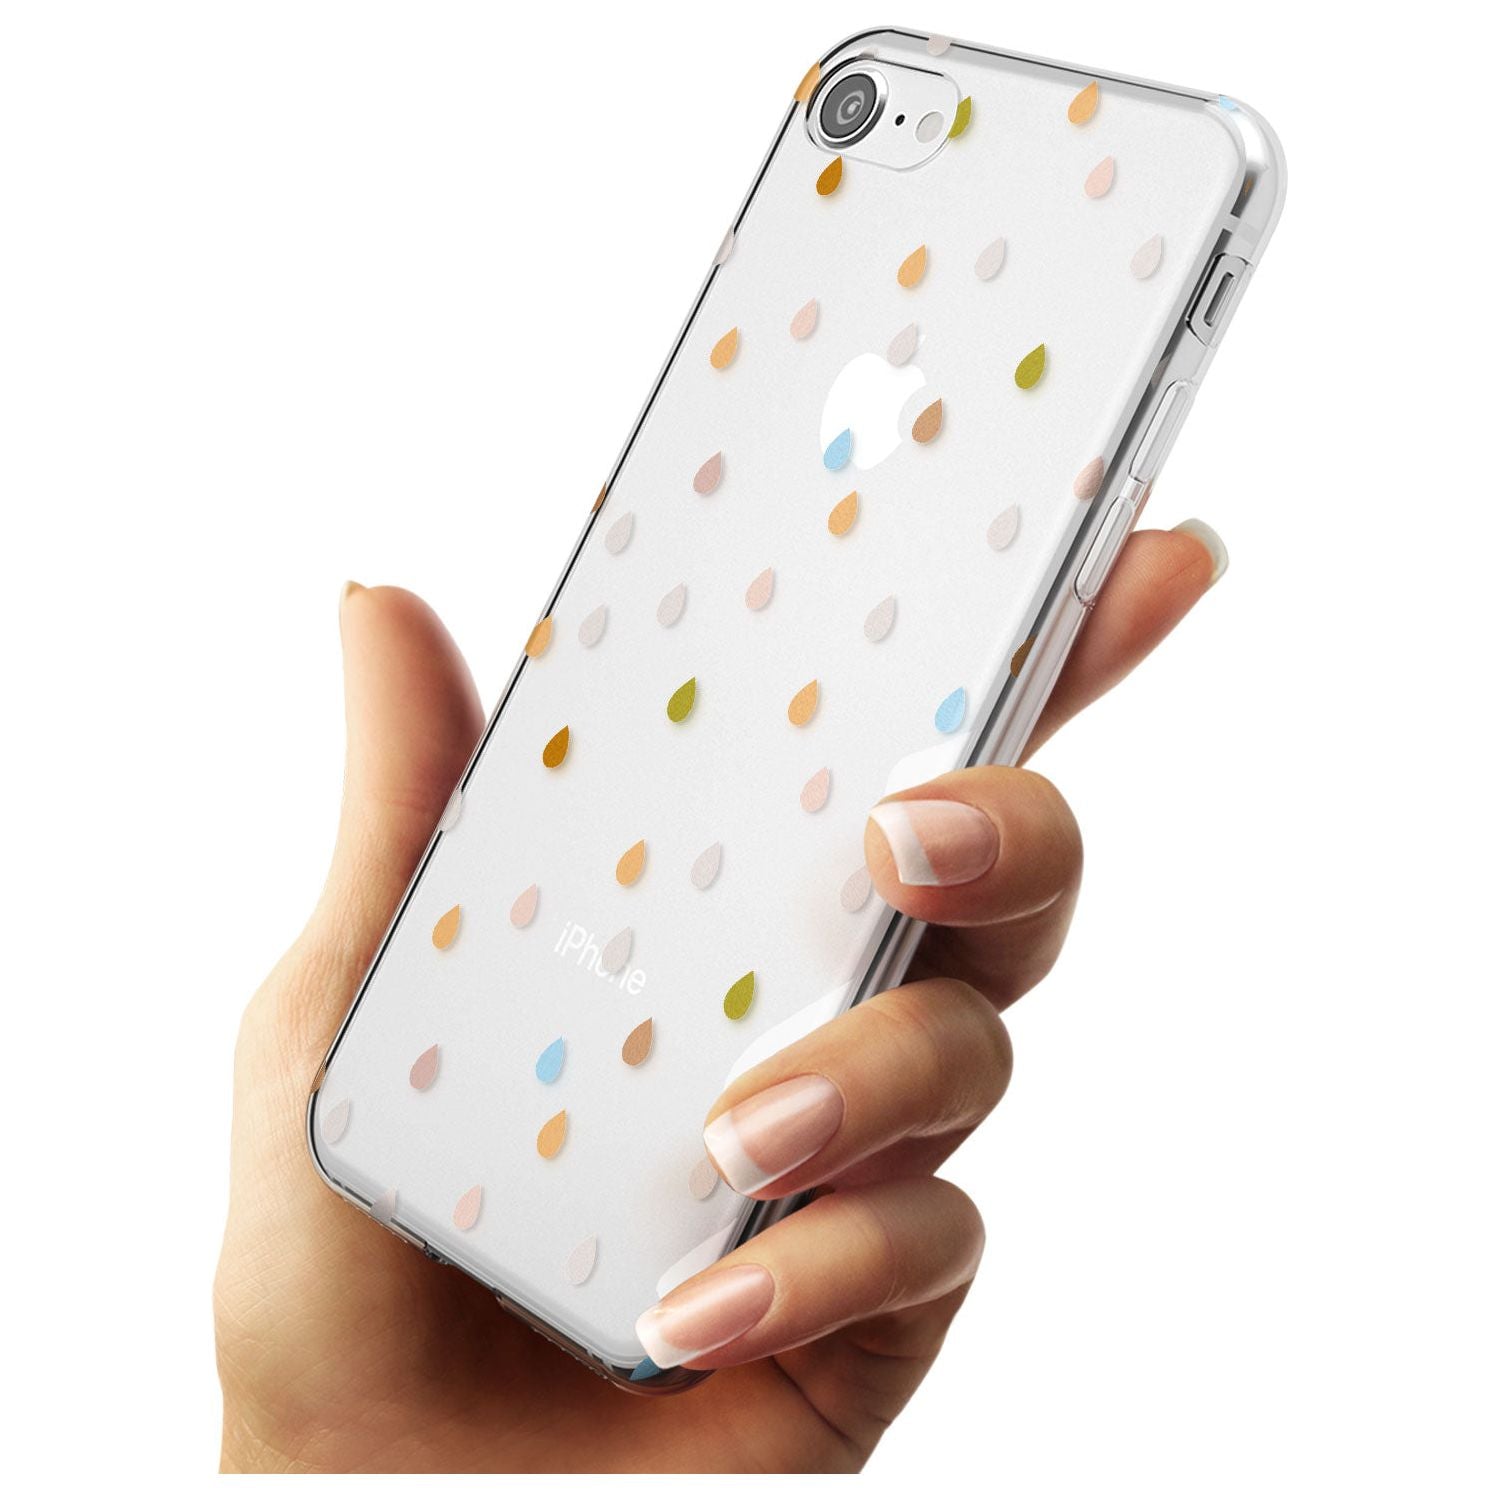 Raindrops Black Impact Phone Case for iPhone SE 8 7 Plus